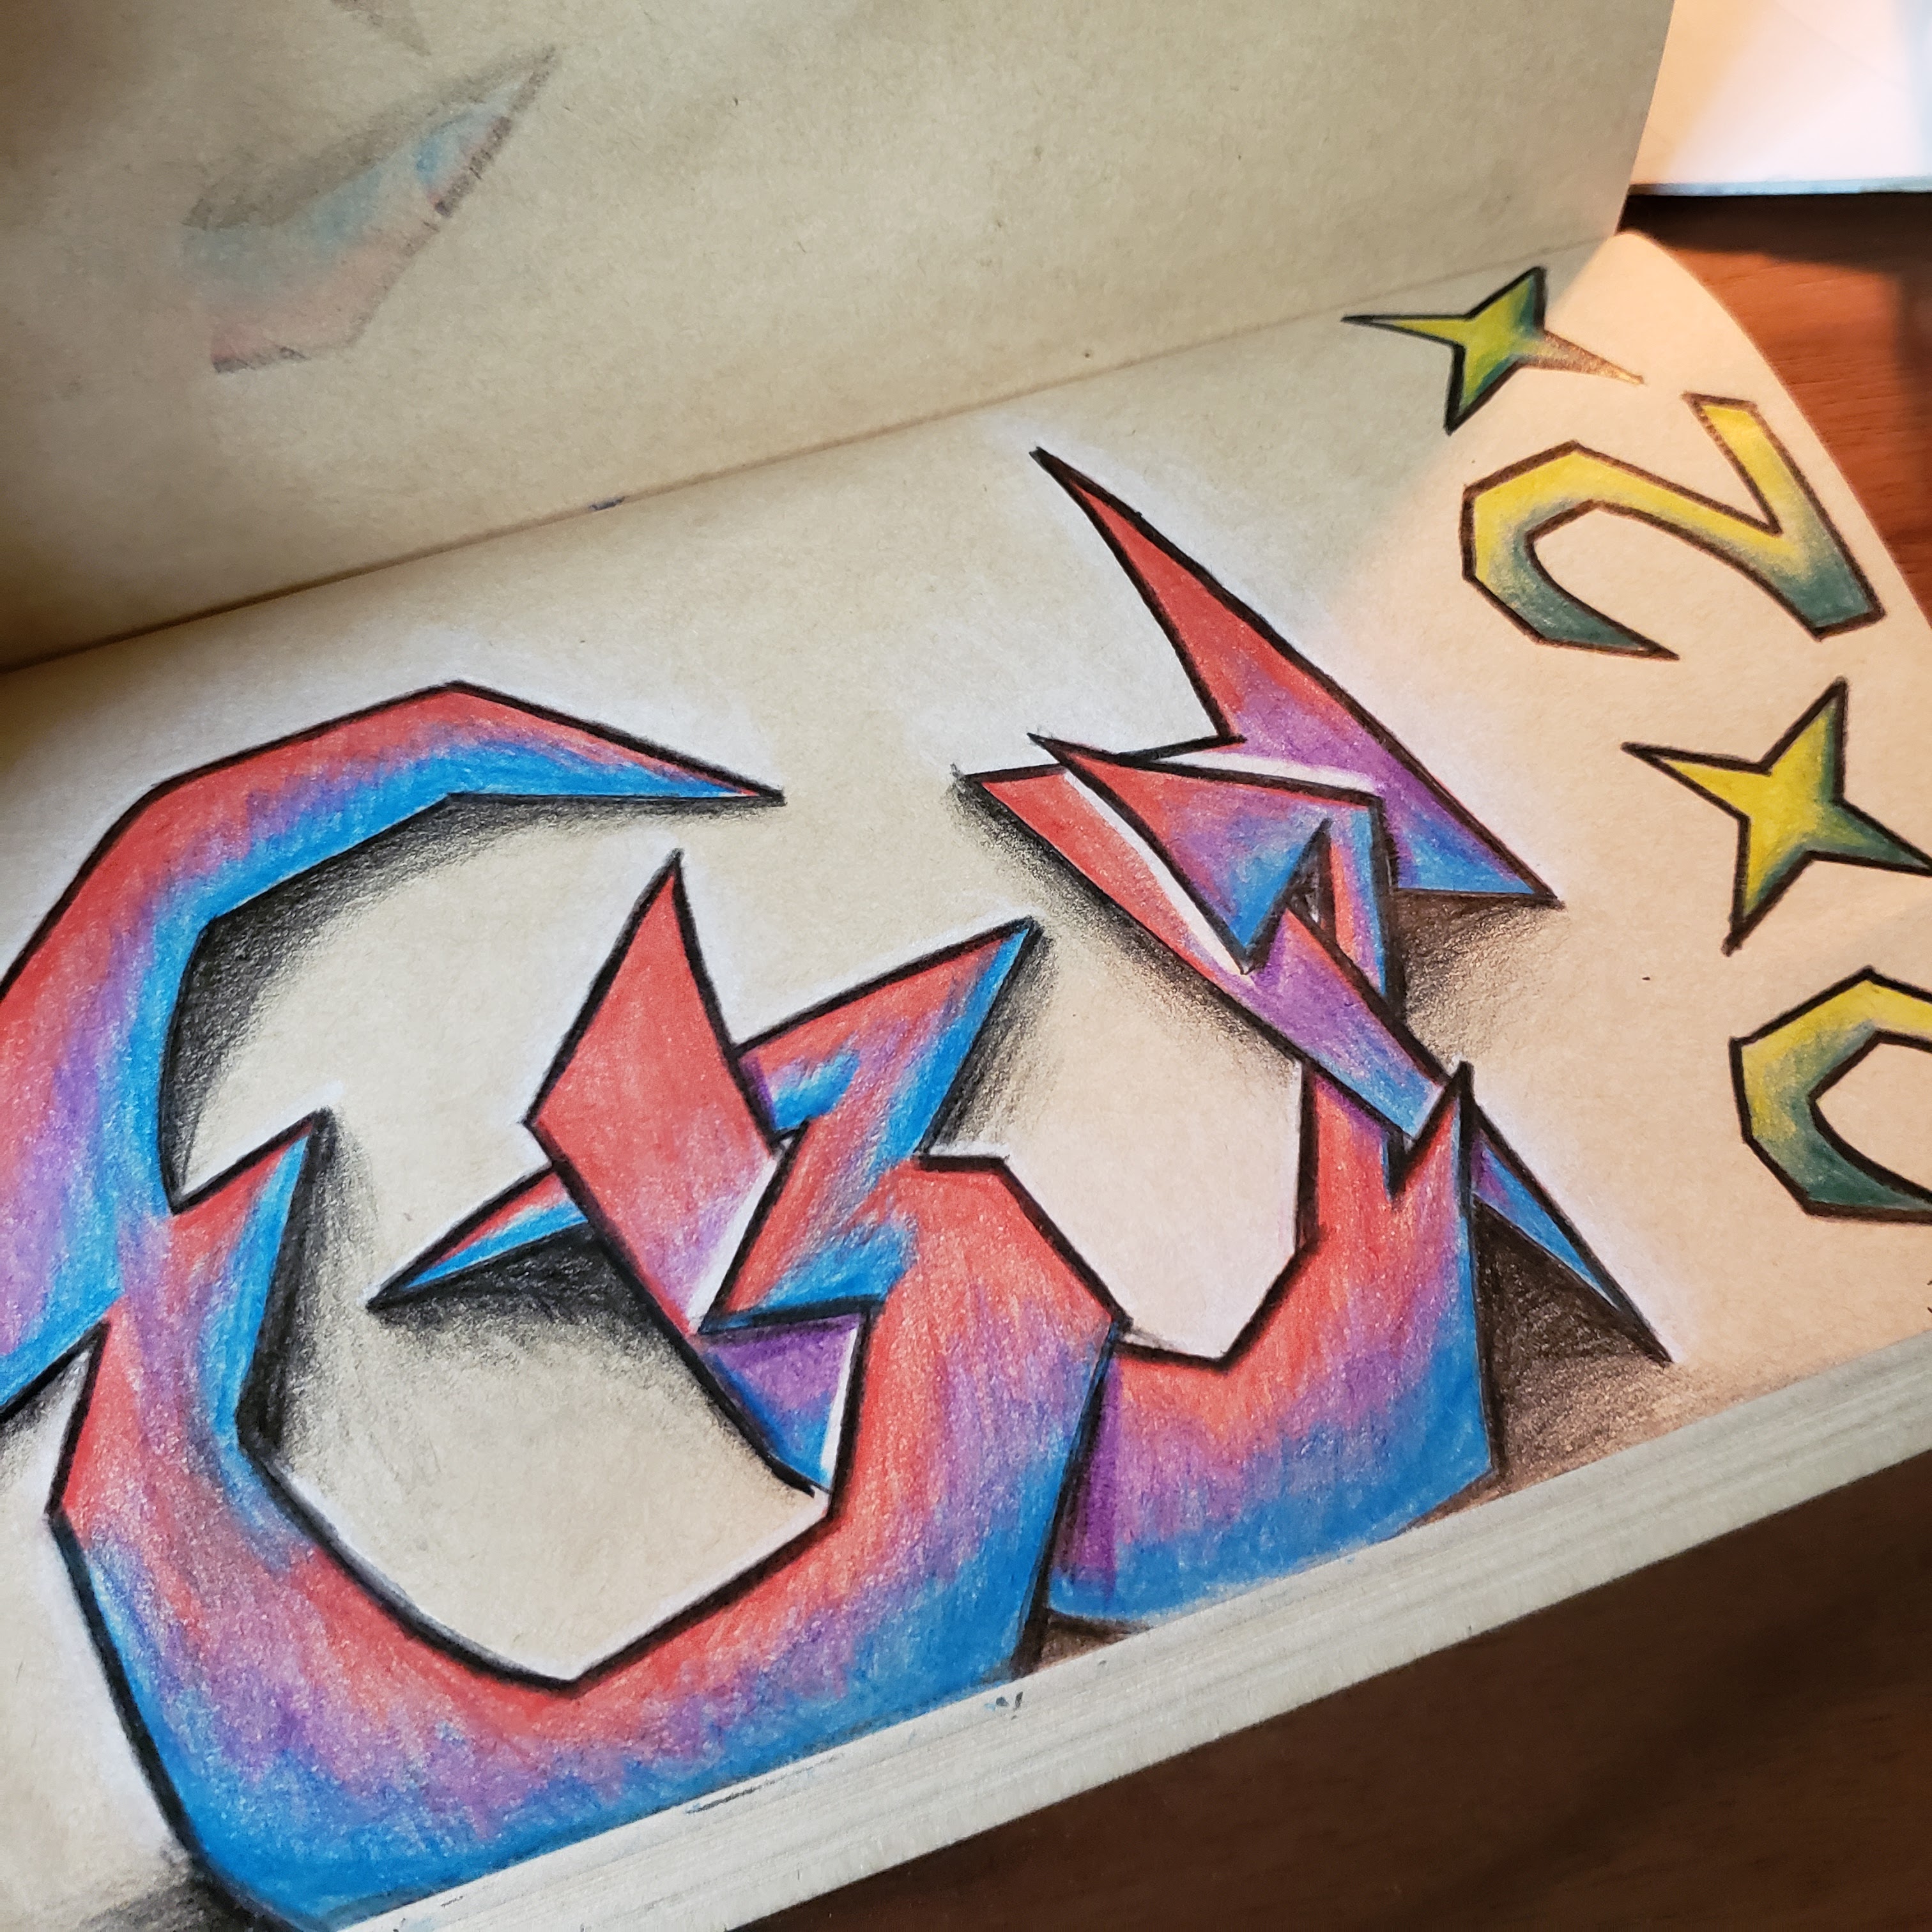 Graffiti Alphabet Murals How To Make Graffiti Alphabet Volcom